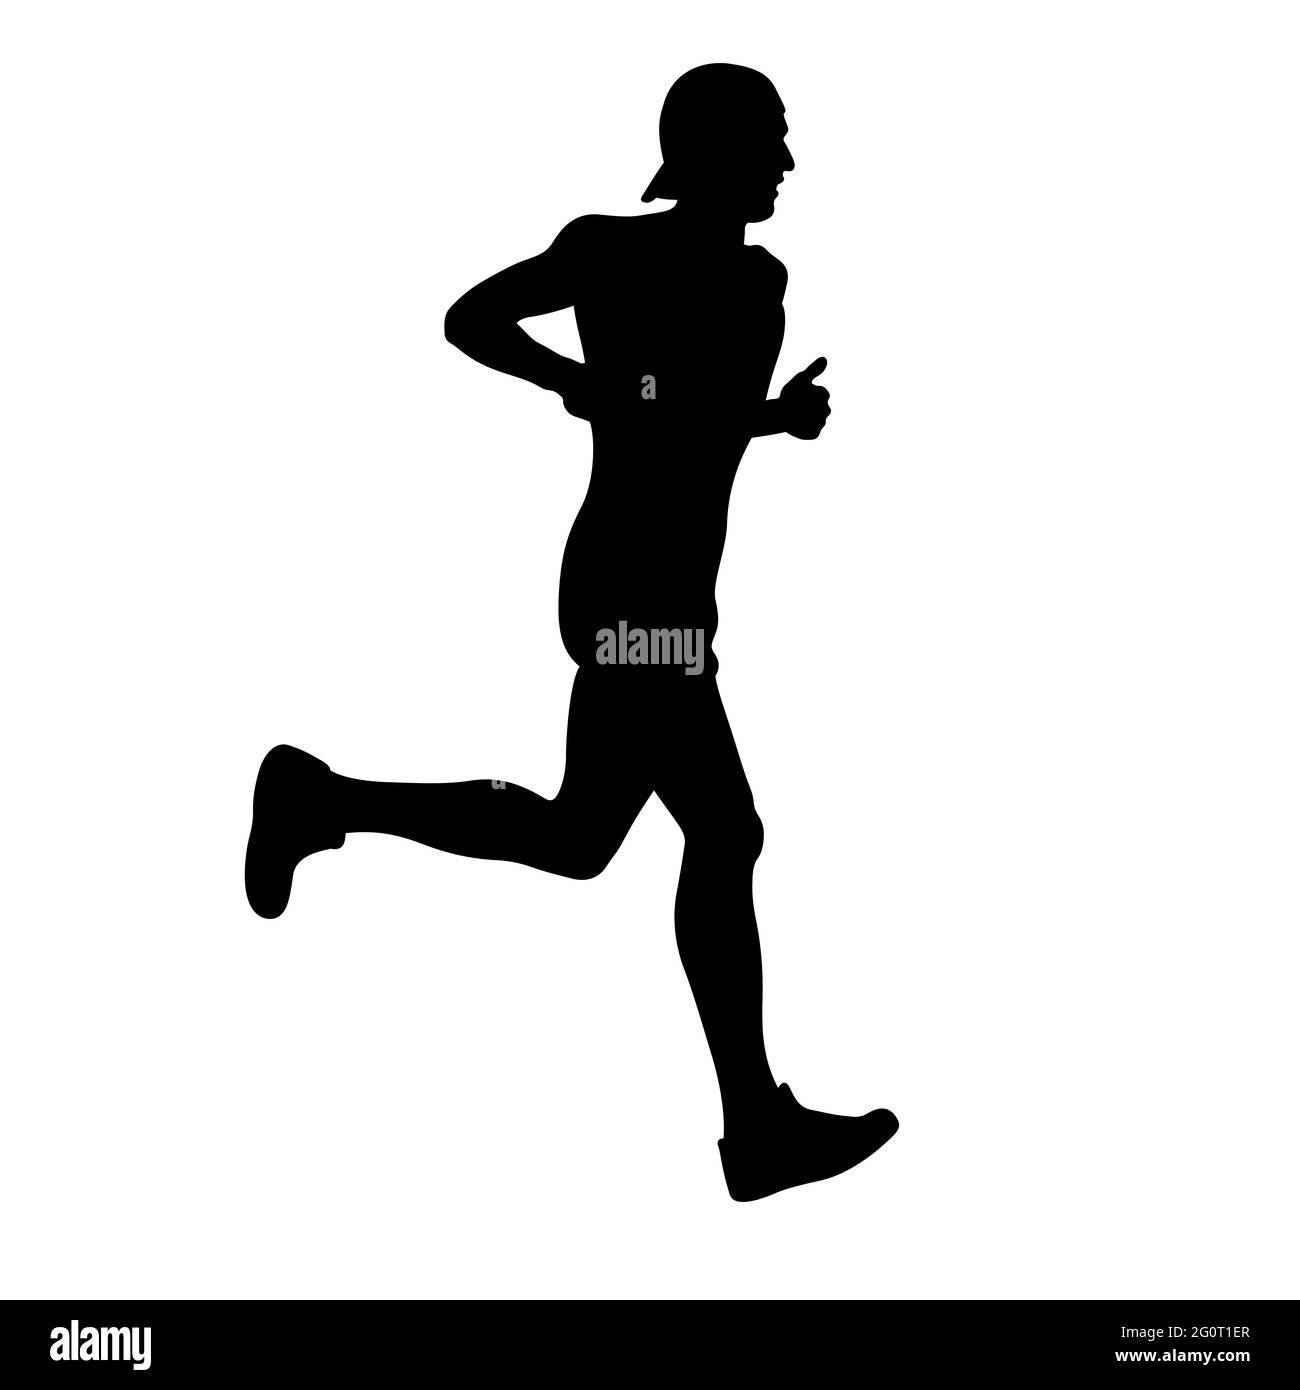 male runner athlete in cap running black silhouette Stock Photo